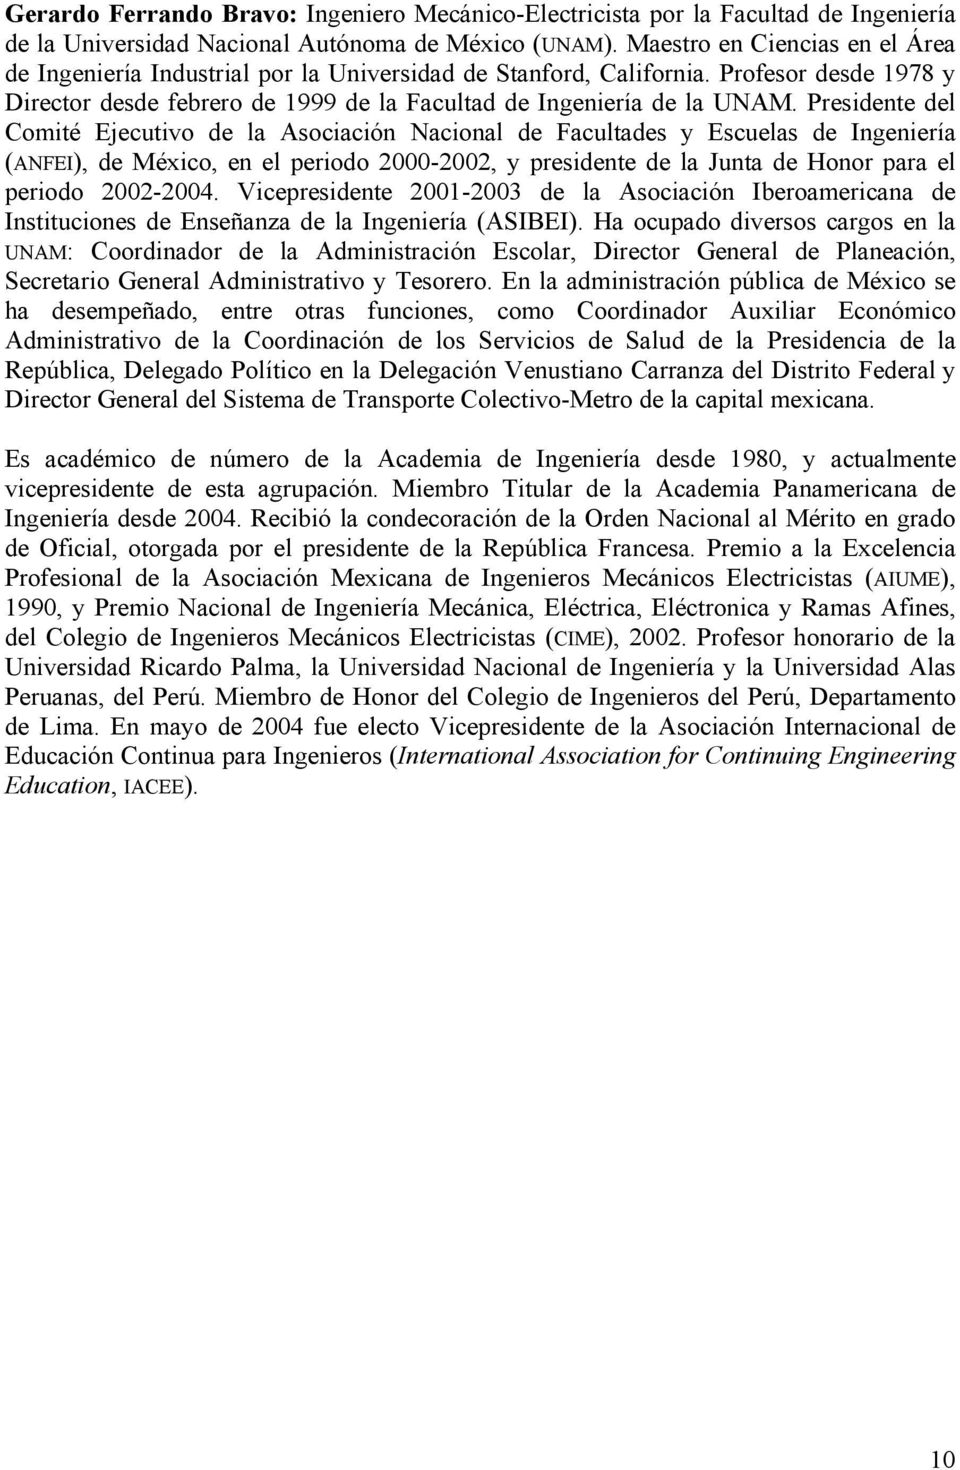 Presidente del Comité Ejecutivo de la Asociación Nacional de Facultades y Escuelas de Ingeniería (ANFEI), de México, en el periodo 2000-2002, y presidente de la Junta de Honor para el periodo